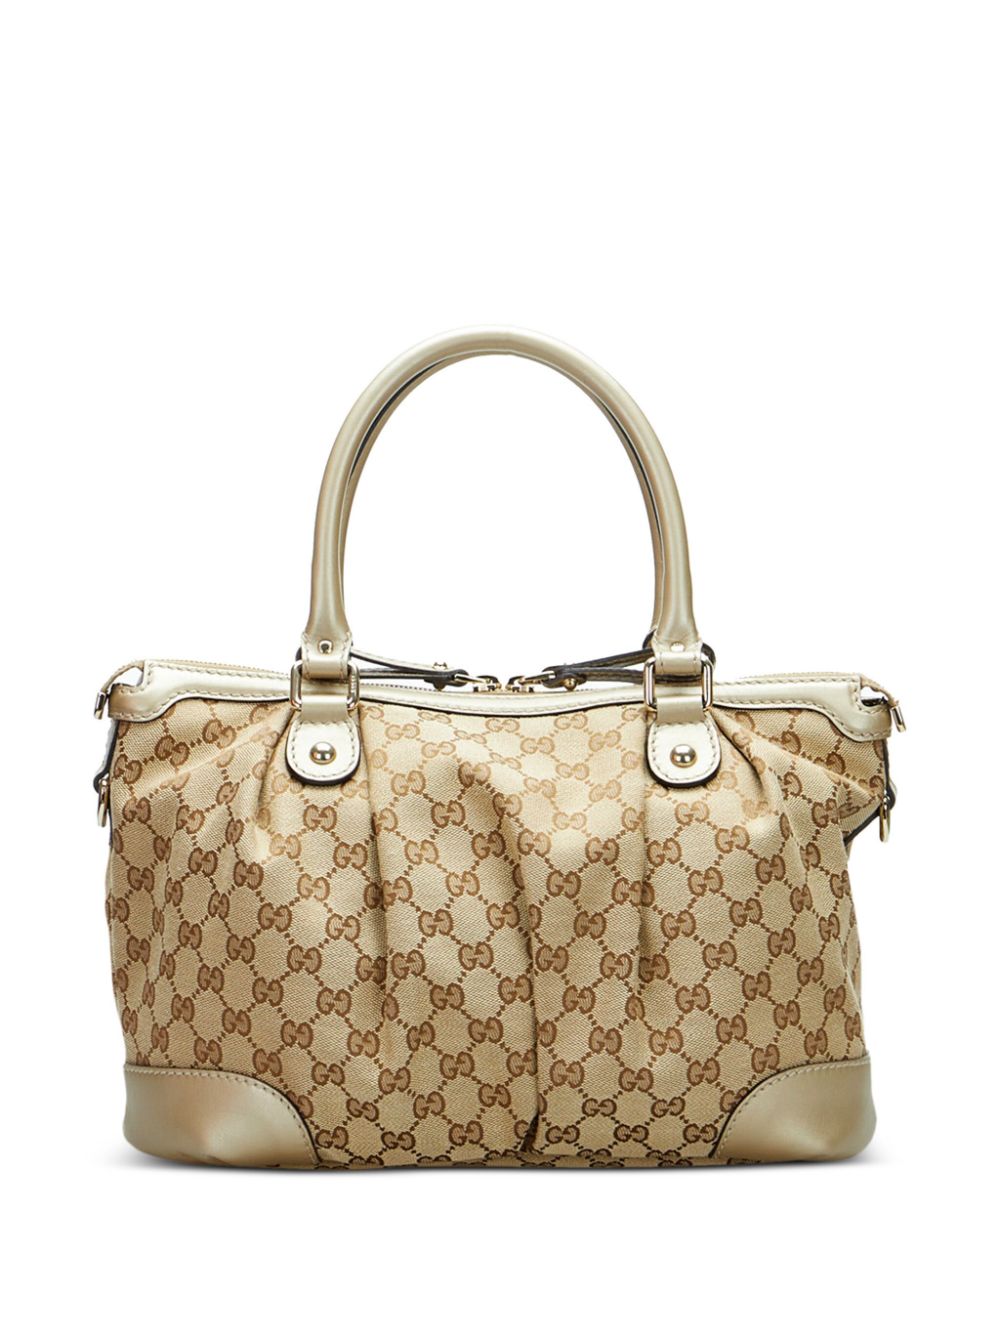 Gucci Pre-Owned Sukey GG canvas handbag - Bruin